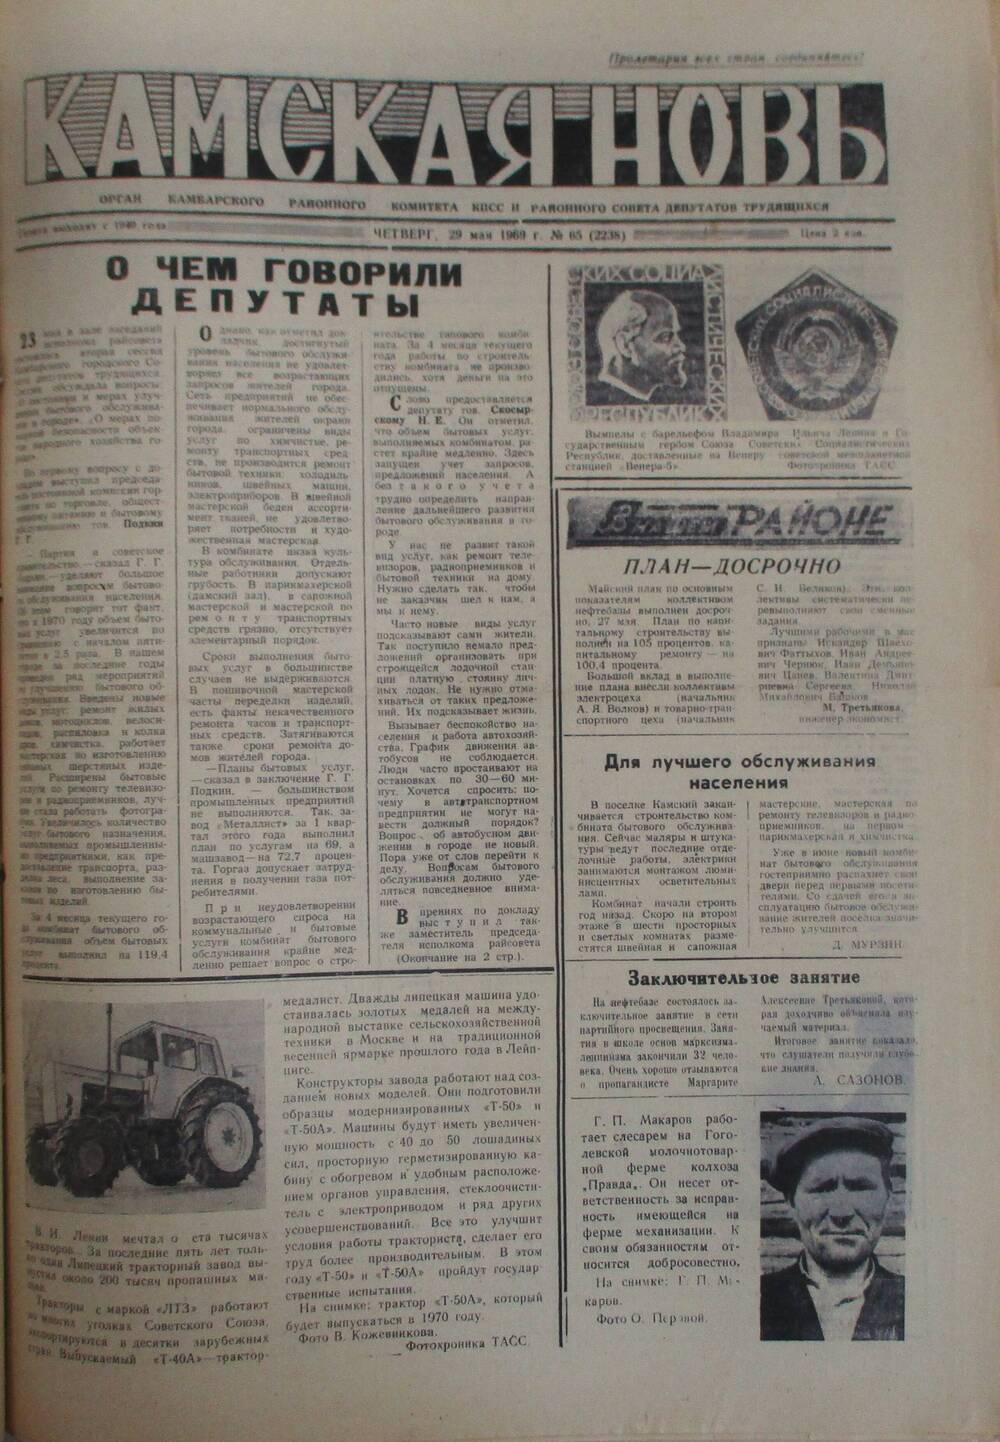 Газеты Камская новь за 1969 год, орган Камбарского райсовета и  РККПСС, с №1 по №66, с №68 по №156. №65.